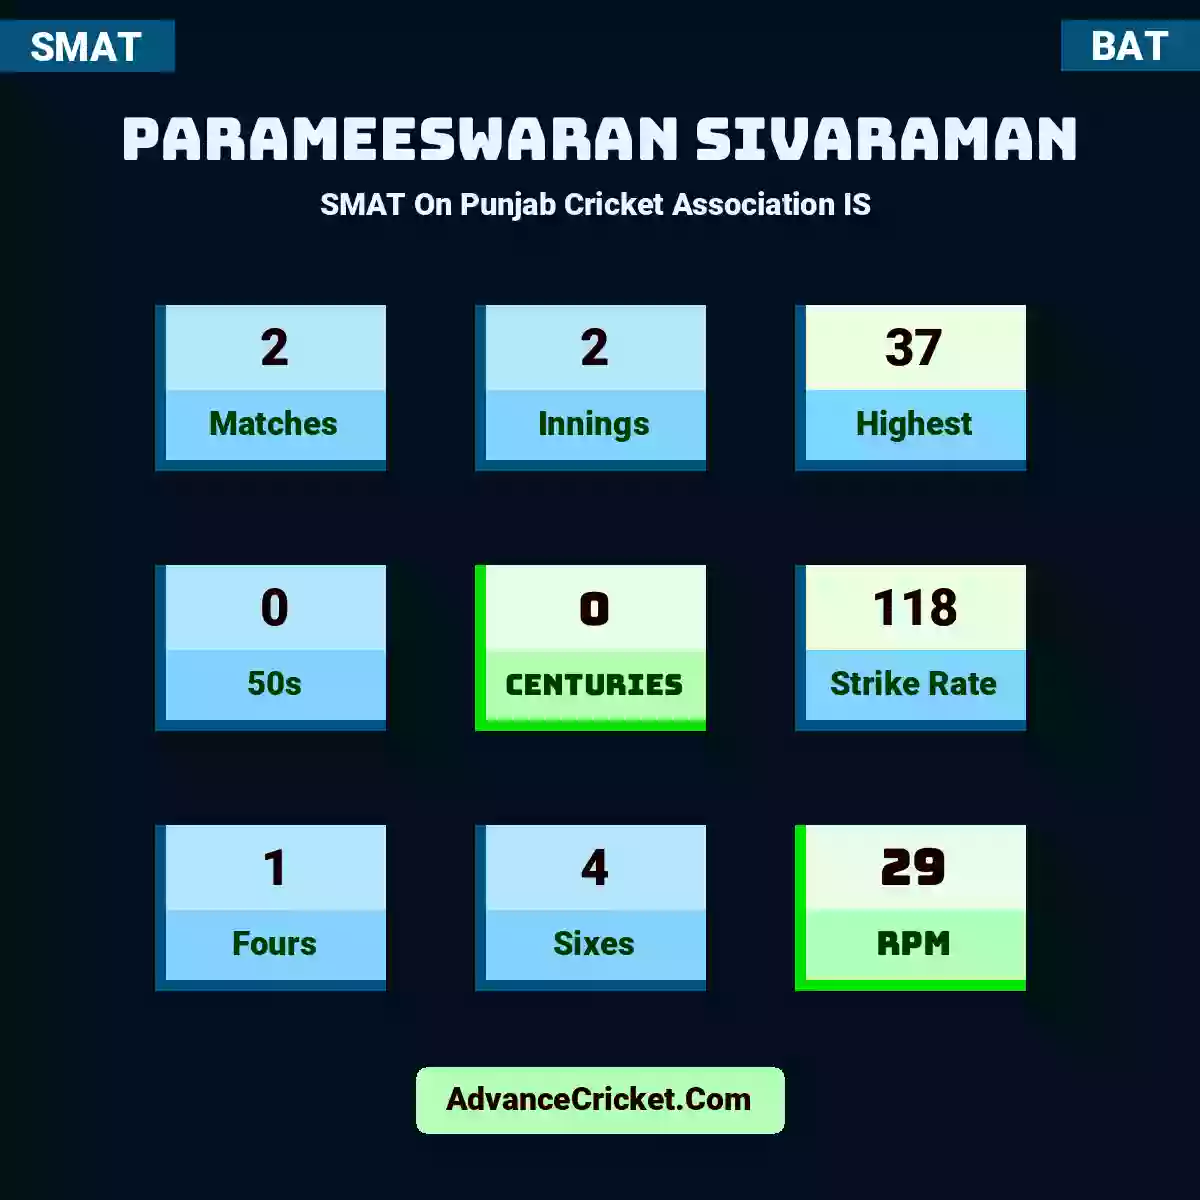 Parameeswaran Sivaraman SMAT  On Punjab Cricket Association IS , Parameeswaran Sivaraman played 2 matches, scored 37 runs as highest, 0 half-centuries, and 0 centuries, with a strike rate of 118. P.Sivaraman hit 1 fours and 4 sixes, with an RPM of 29.